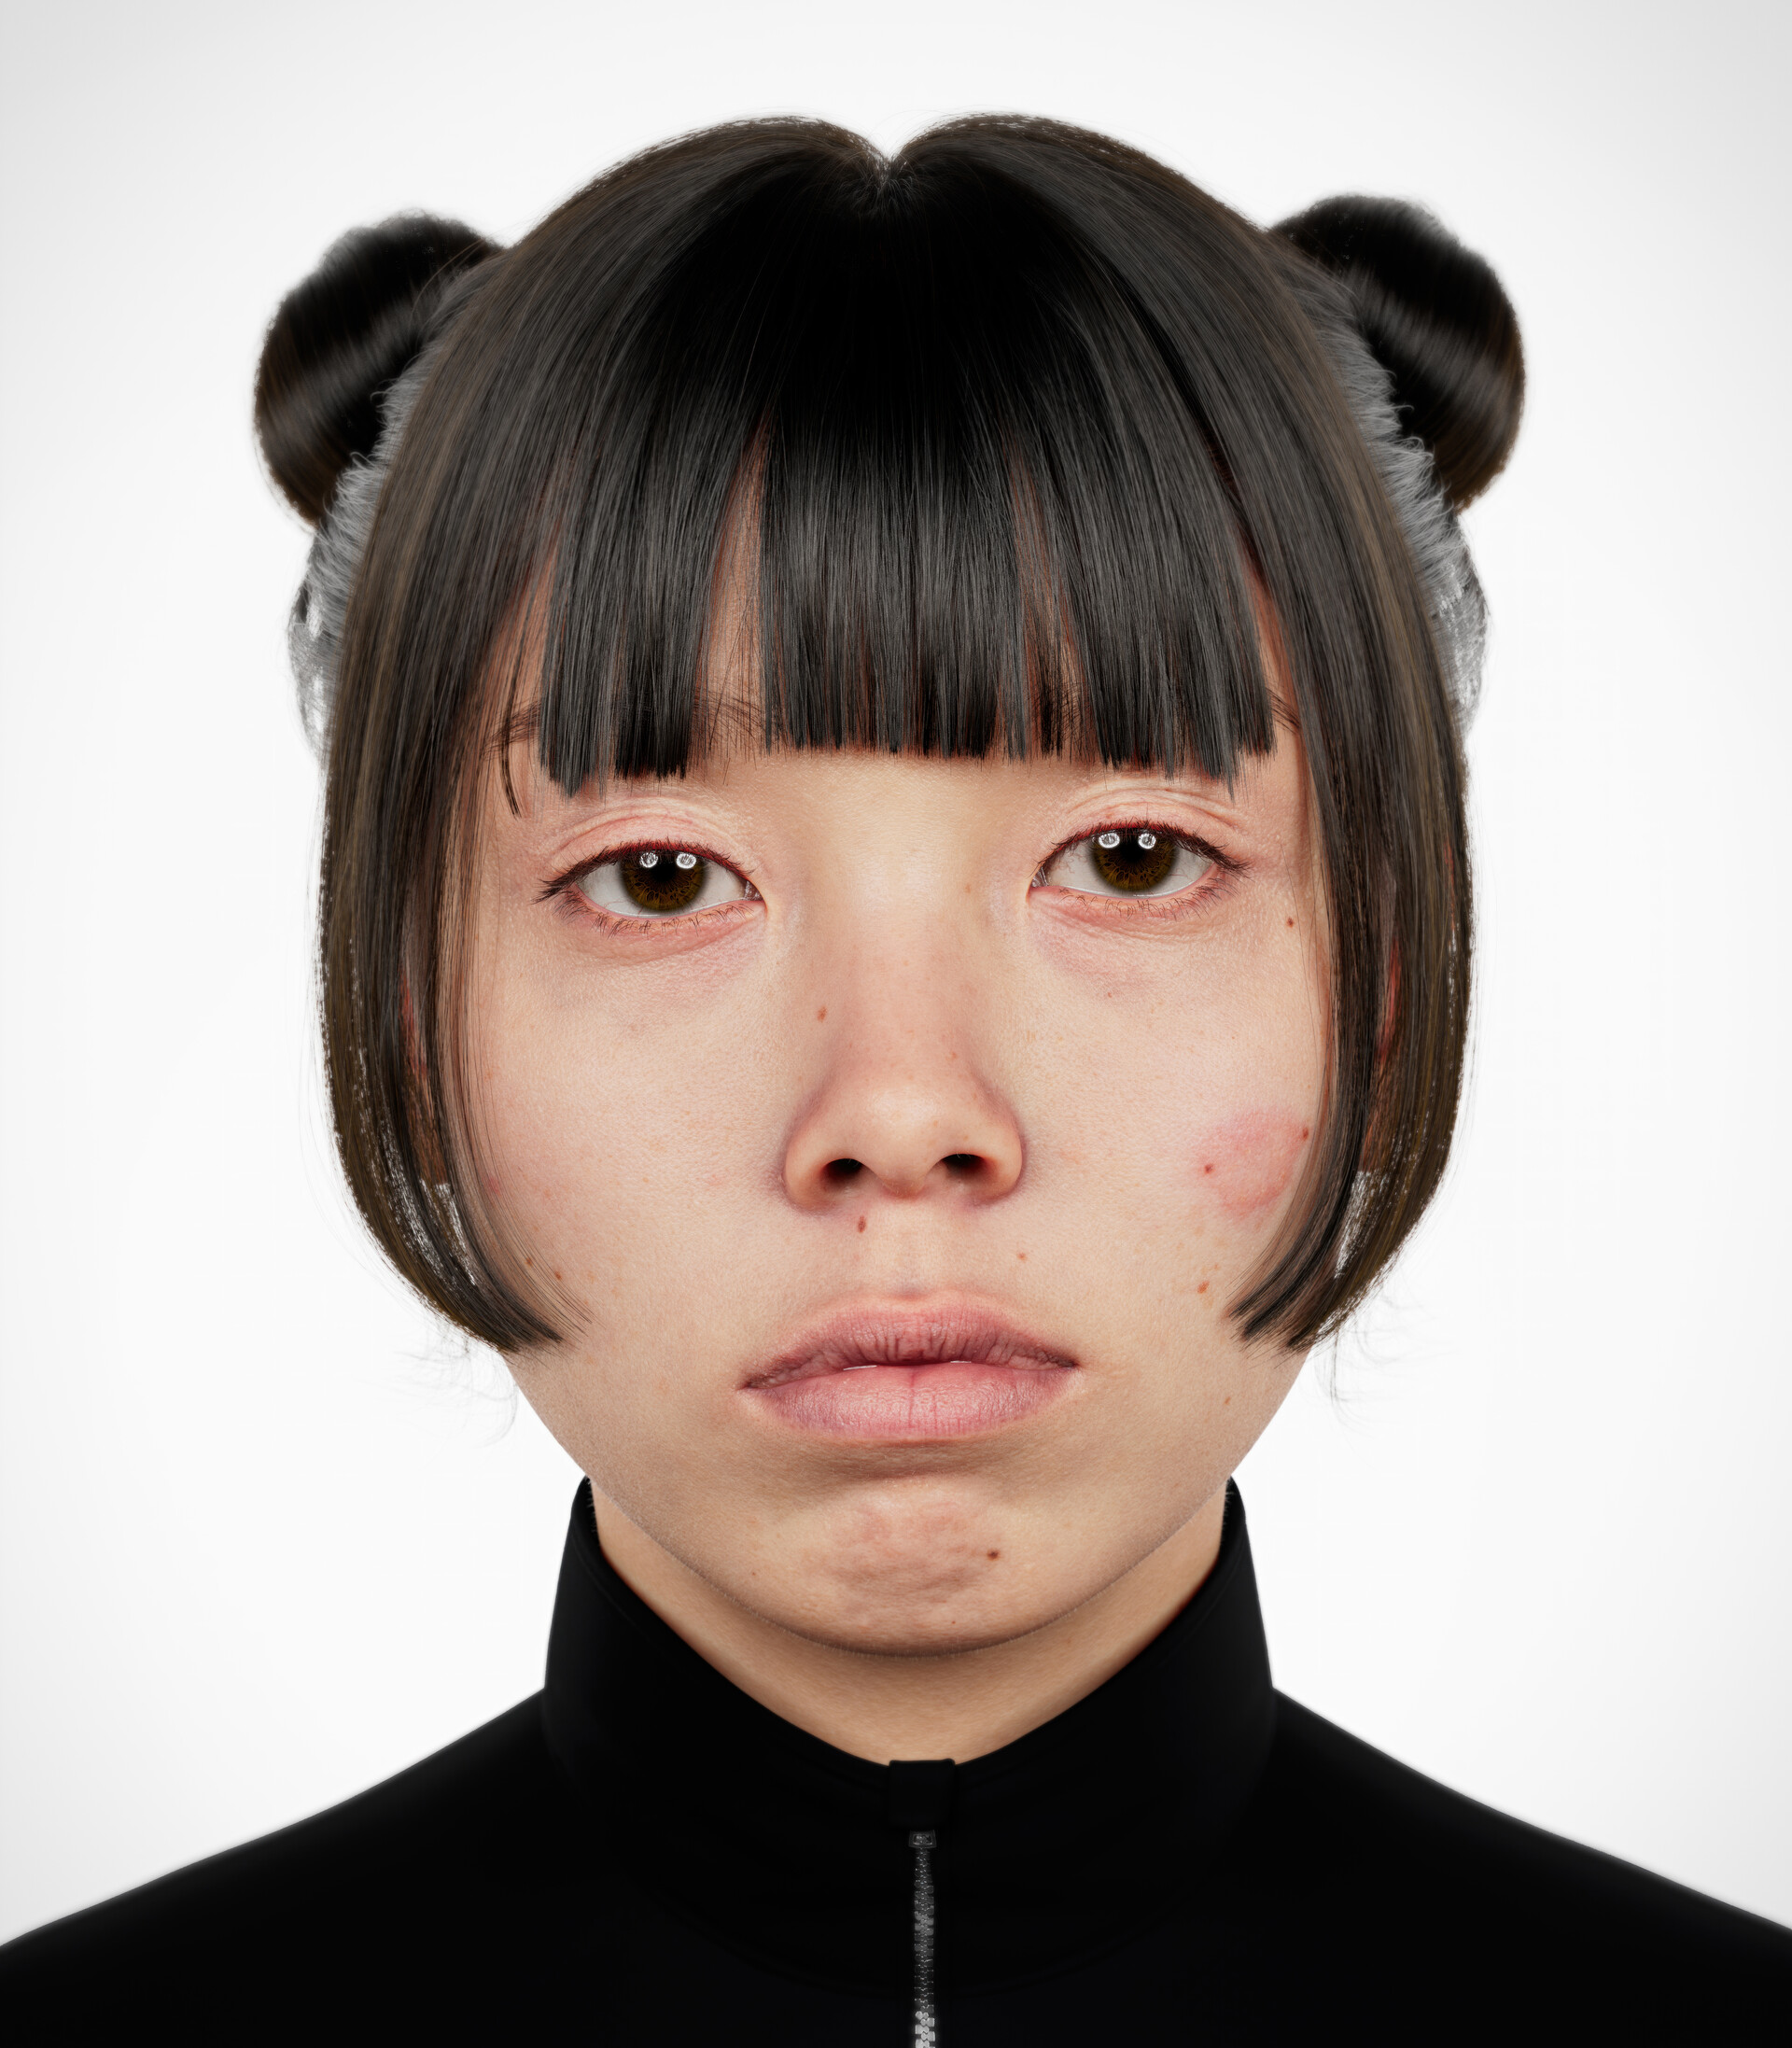 ArtStation - Kumiko 3D portrait